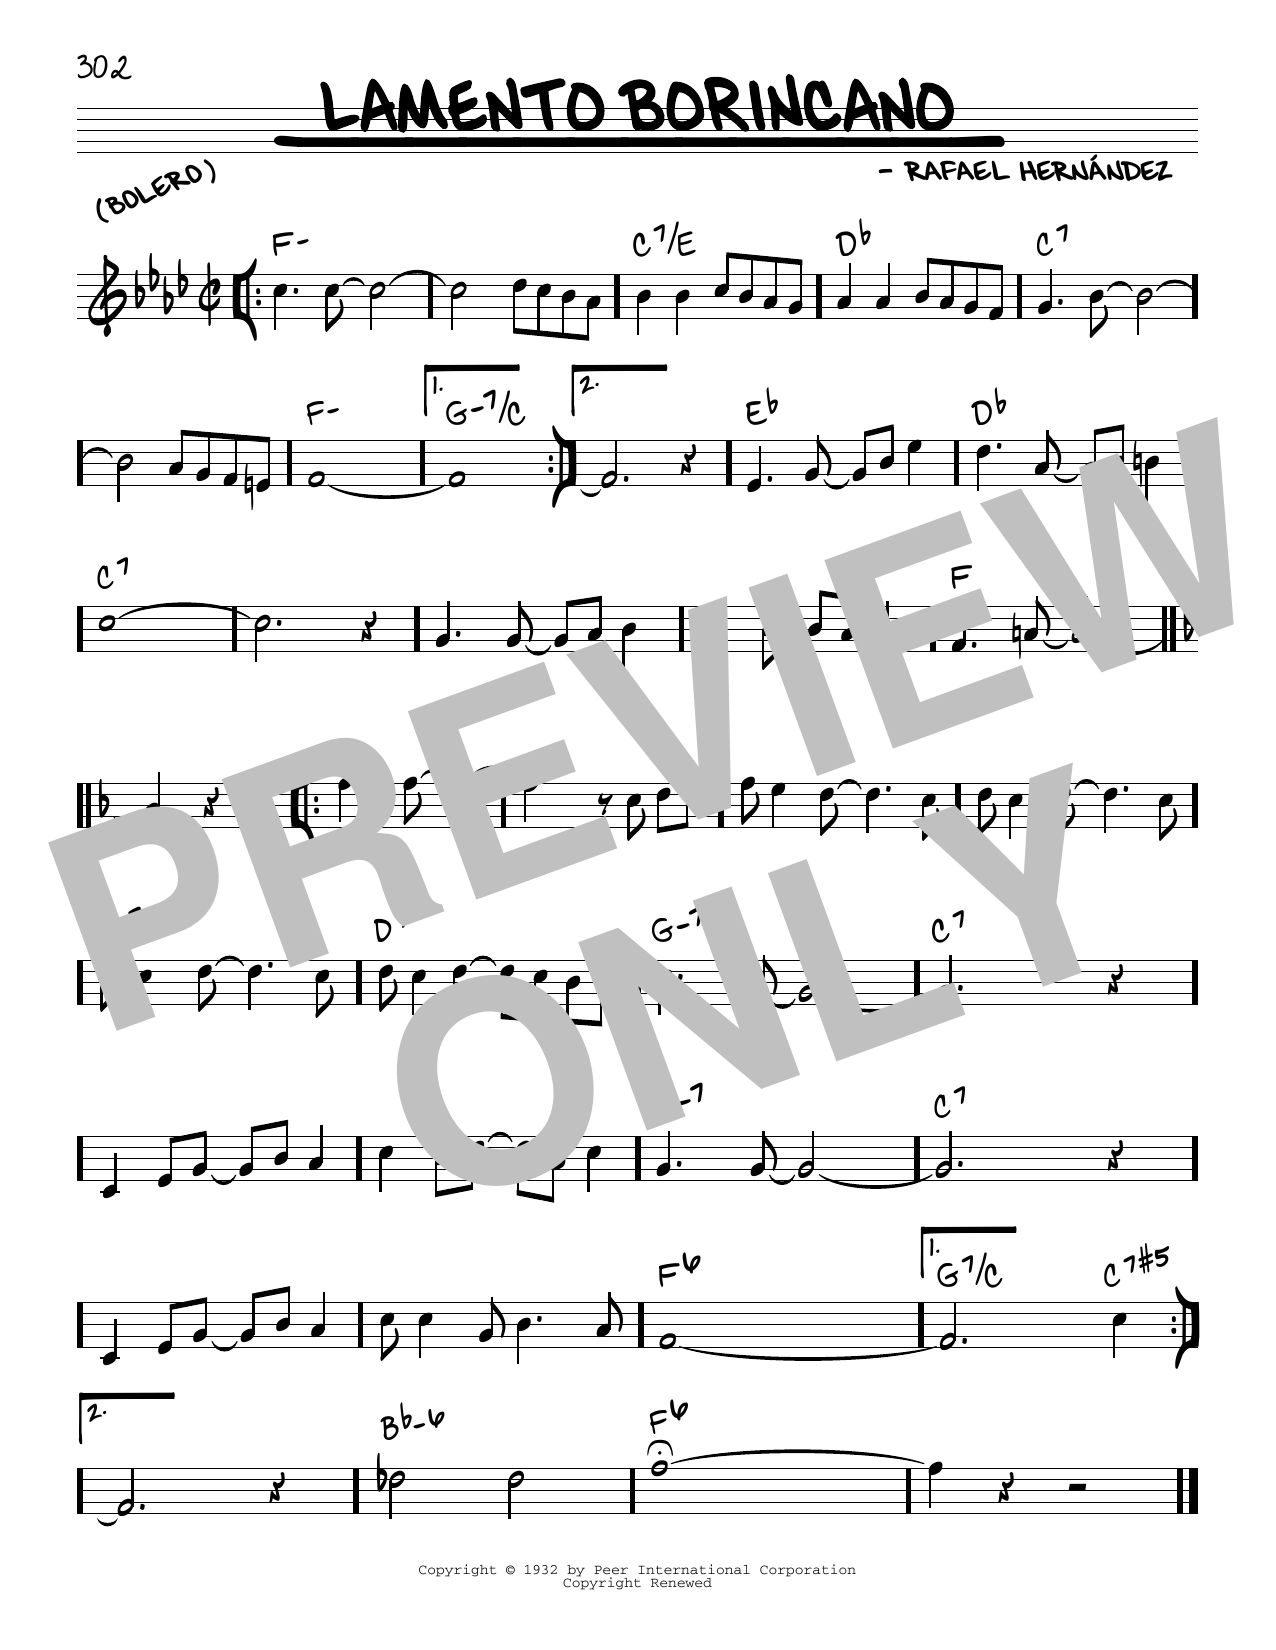 Rafael Hernandez Lamento Borincano Sheet Music Notes & Chords for Real Book – Melody & Chords - Download or Print PDF